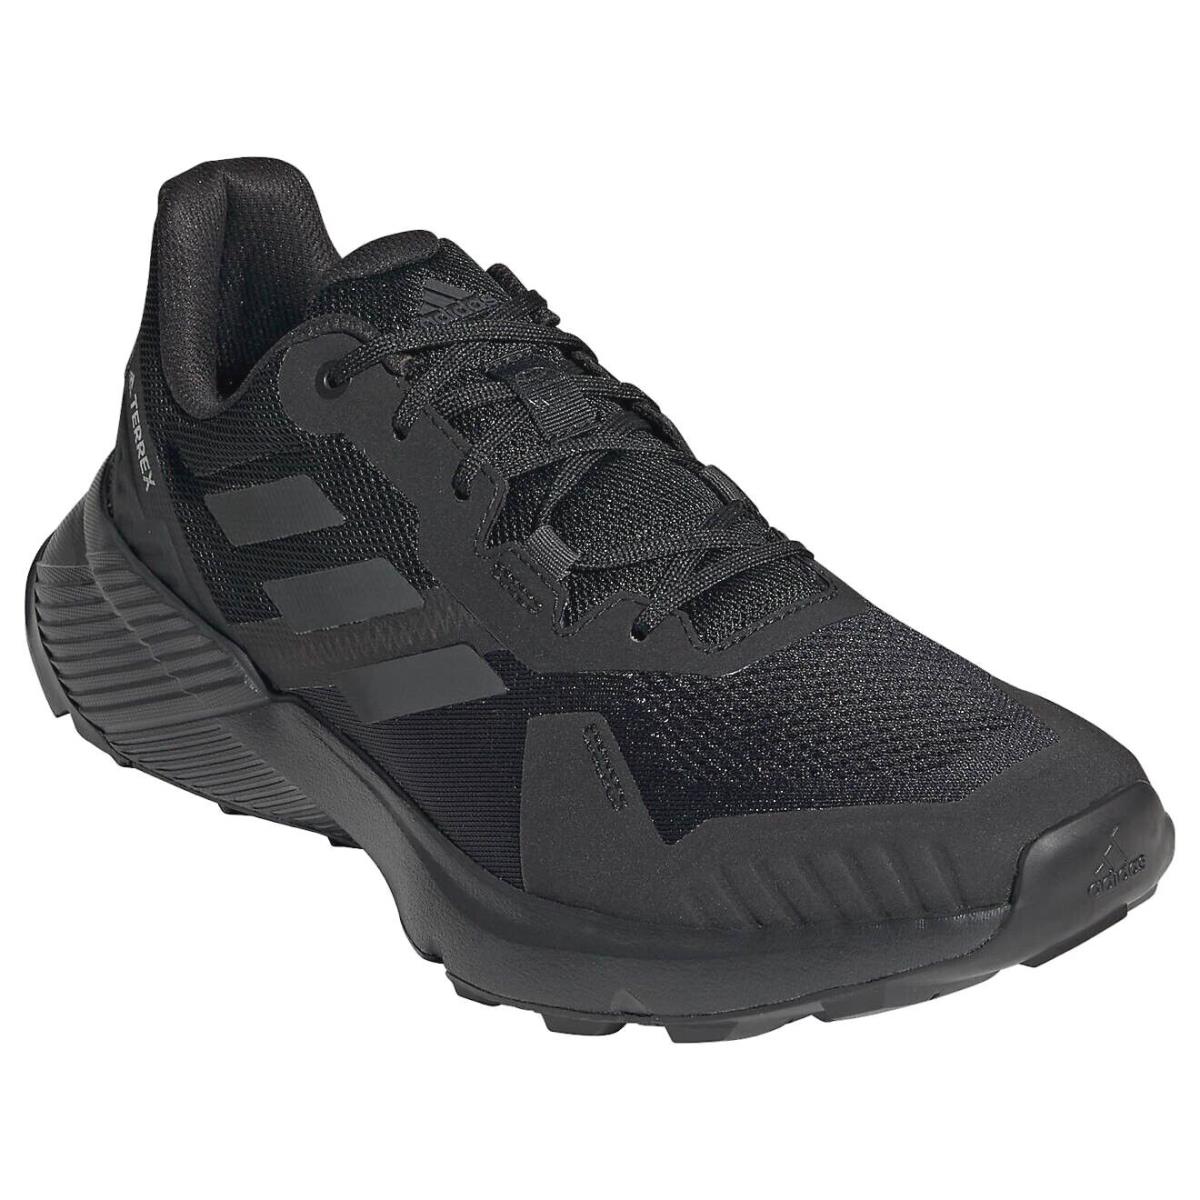 Mens Adidas FY9215 Terrex Soulstride Trail Running Black/grey Shoes Sneakers - BLACK/DARK GREY